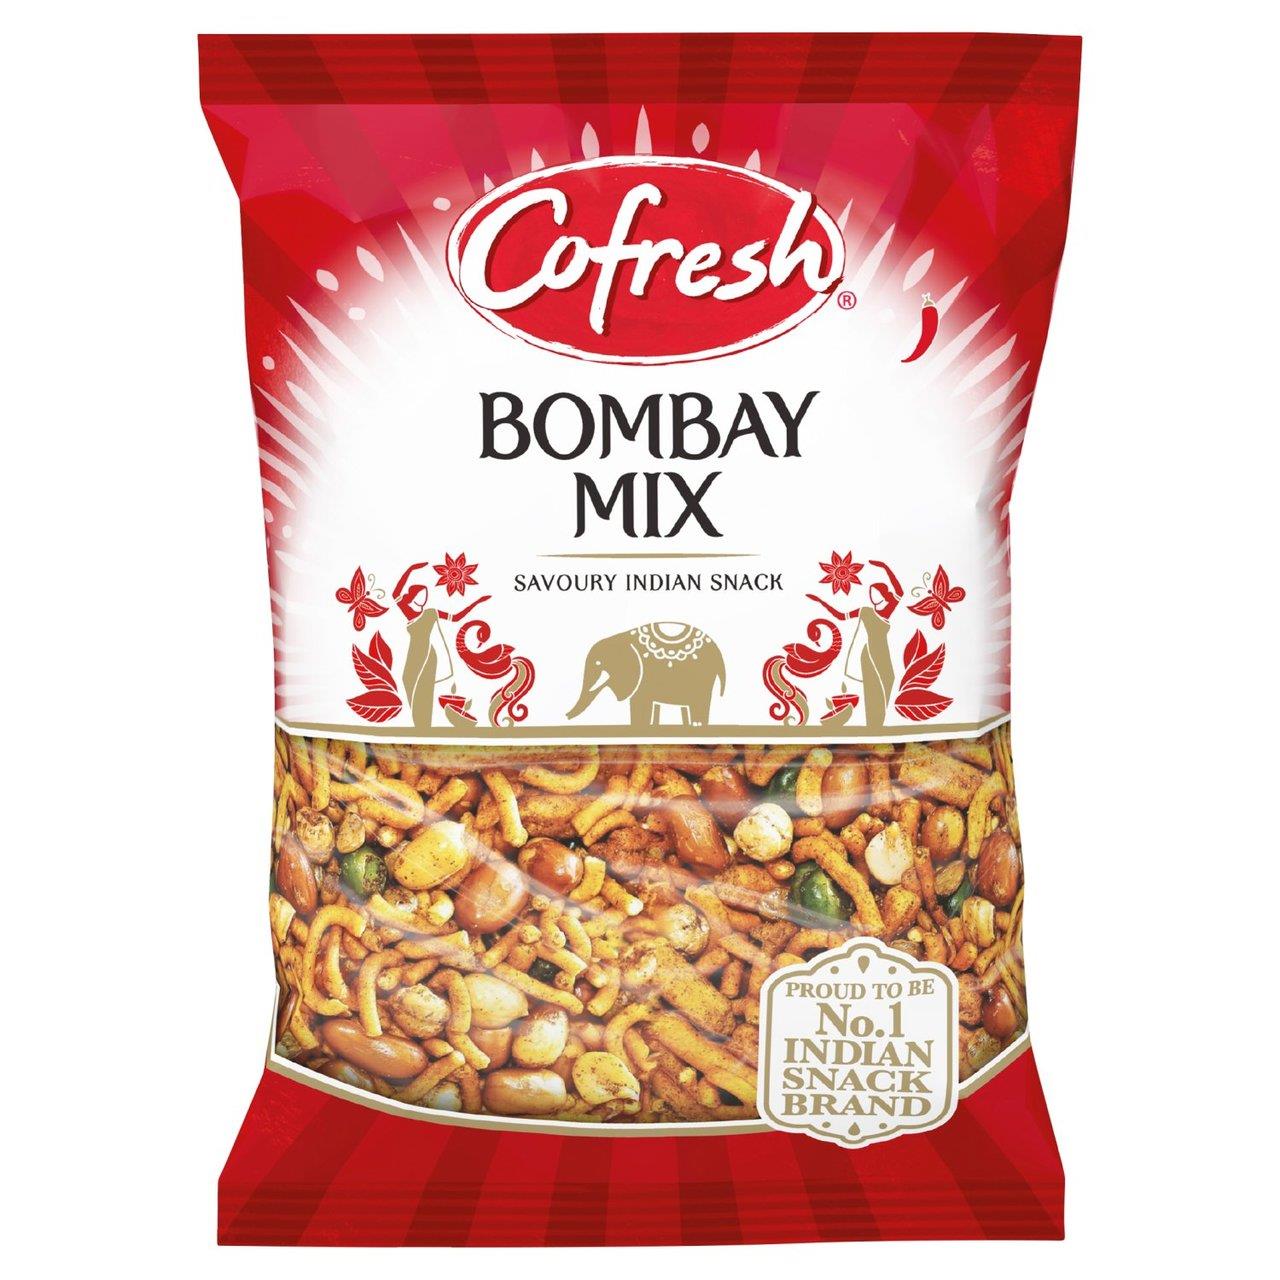 Cofresh Bombay Mix 325g